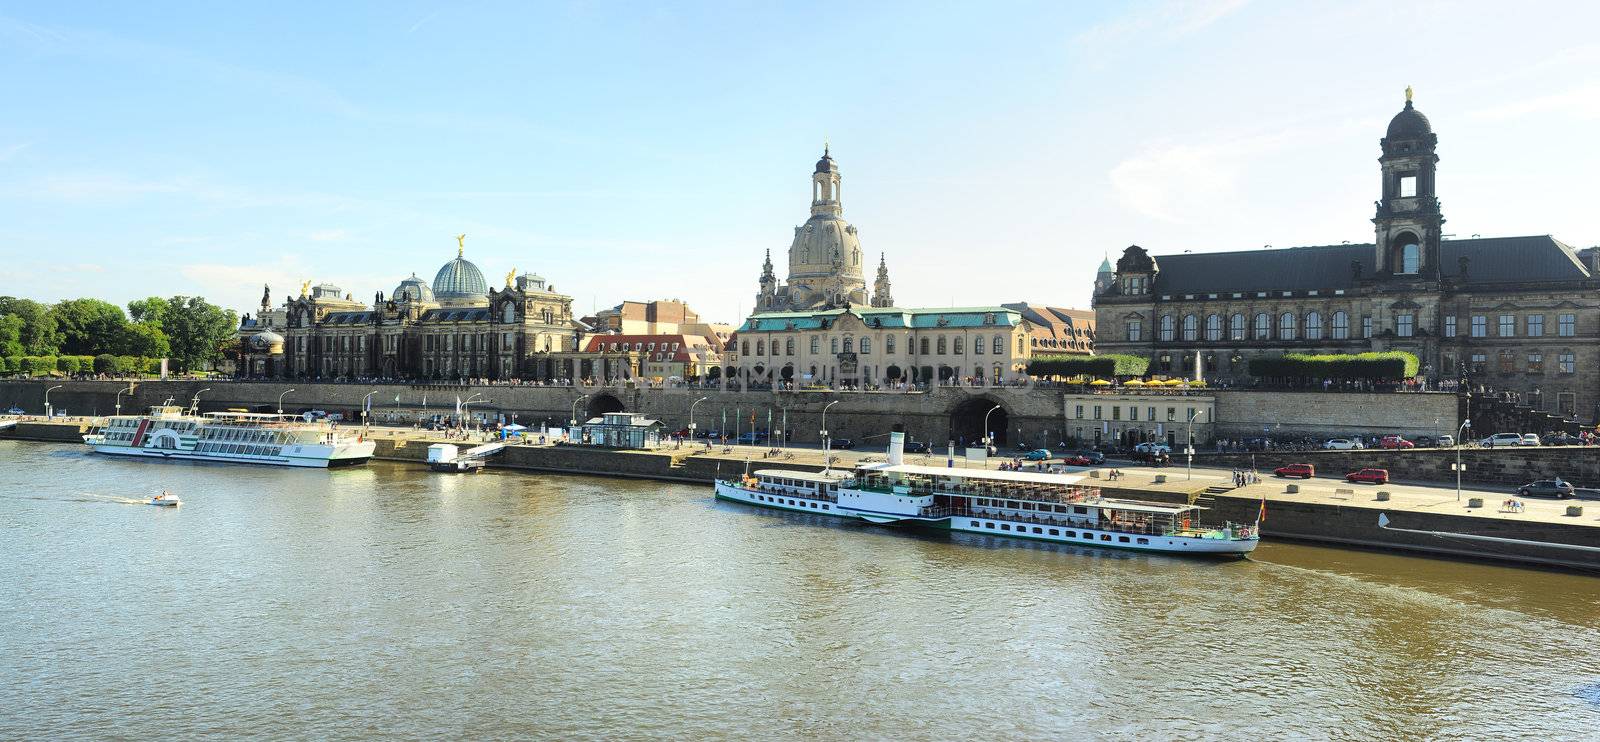  Dresden by joyfull